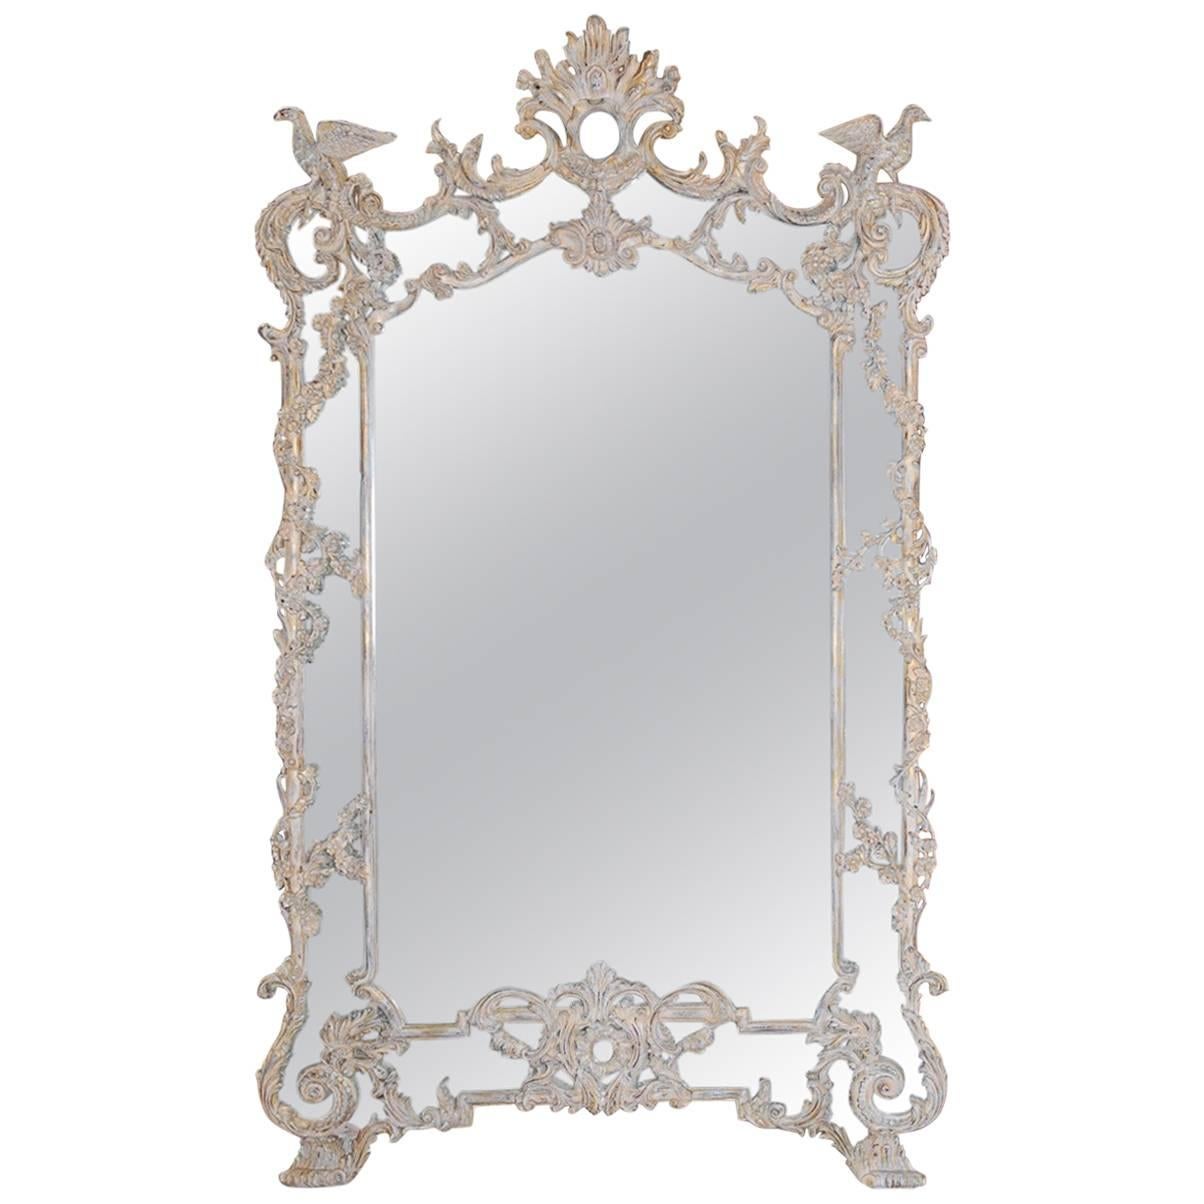 Monumental Italian Rococo Style Mirror with Ho Ho Birds